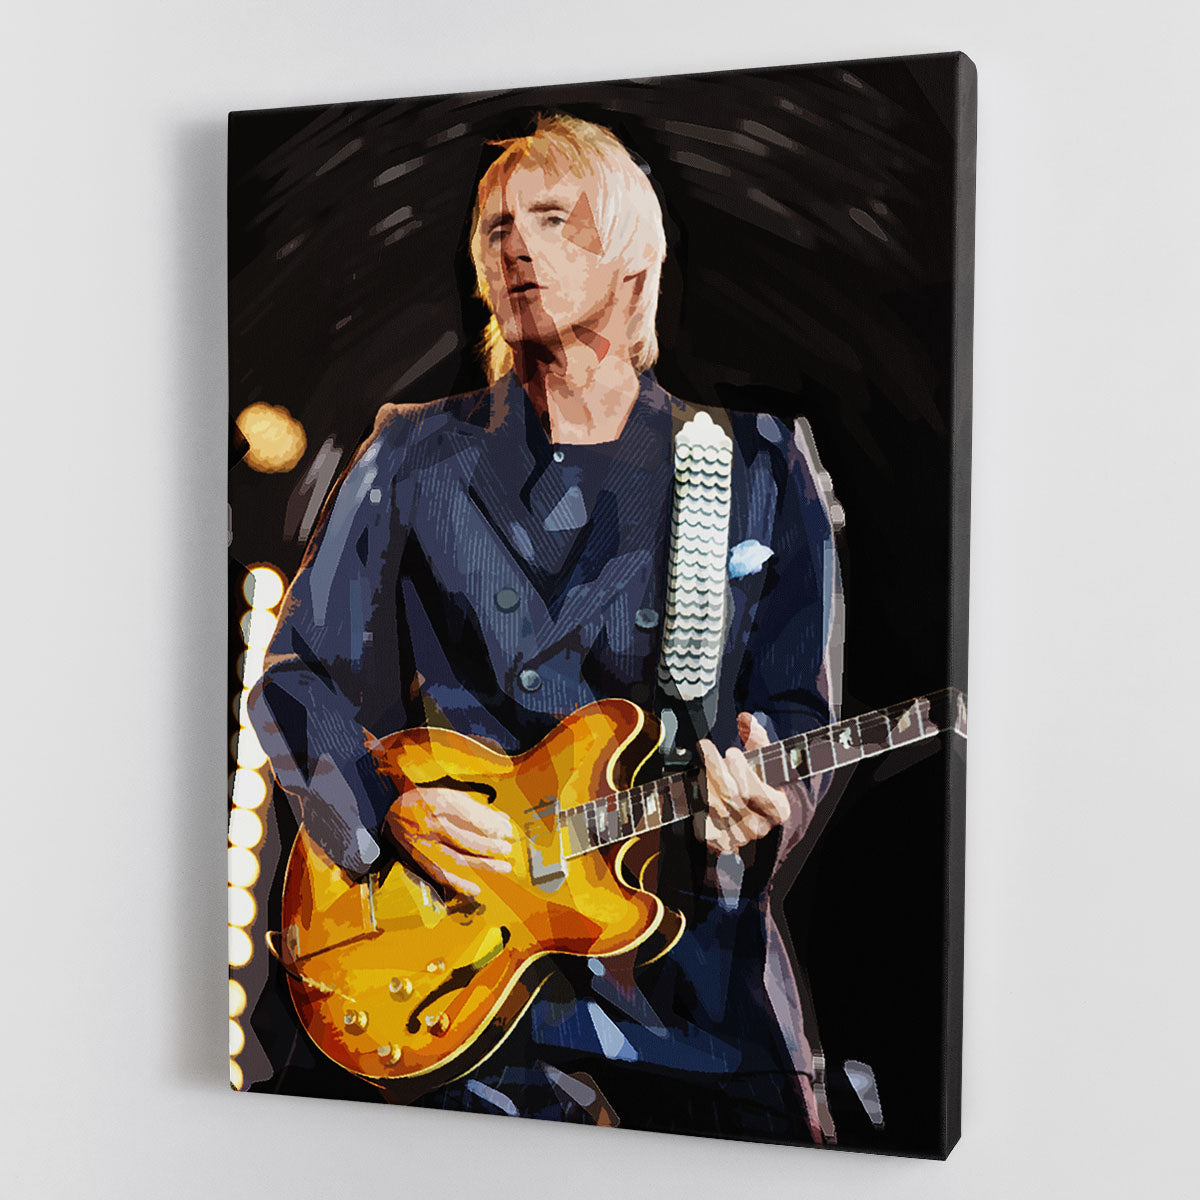 Paul Weller Pop Art Canvas Print or Poster